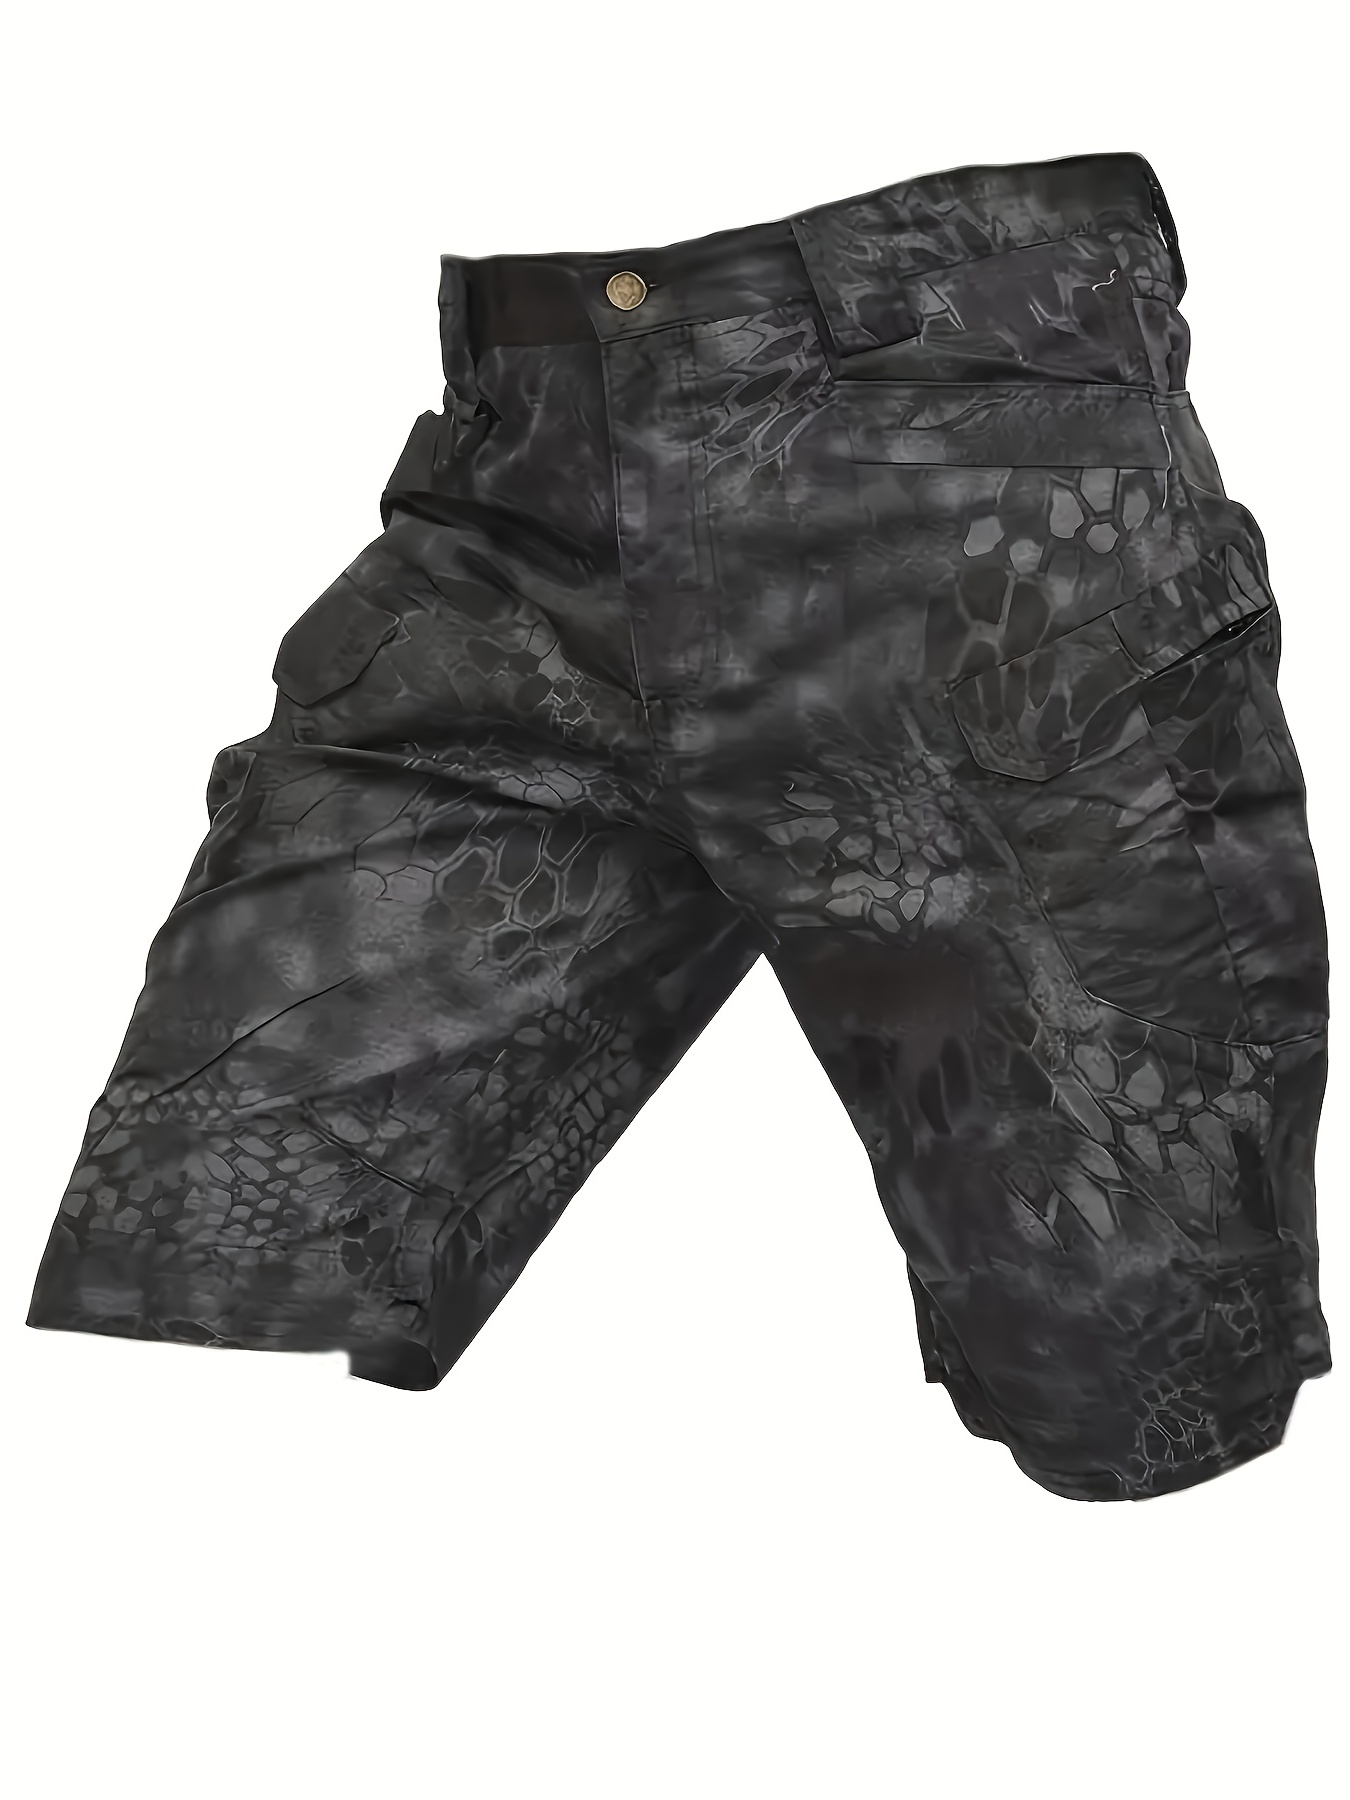 Ochenta - Shorts de algodón con bolsillos multiusos para hombre